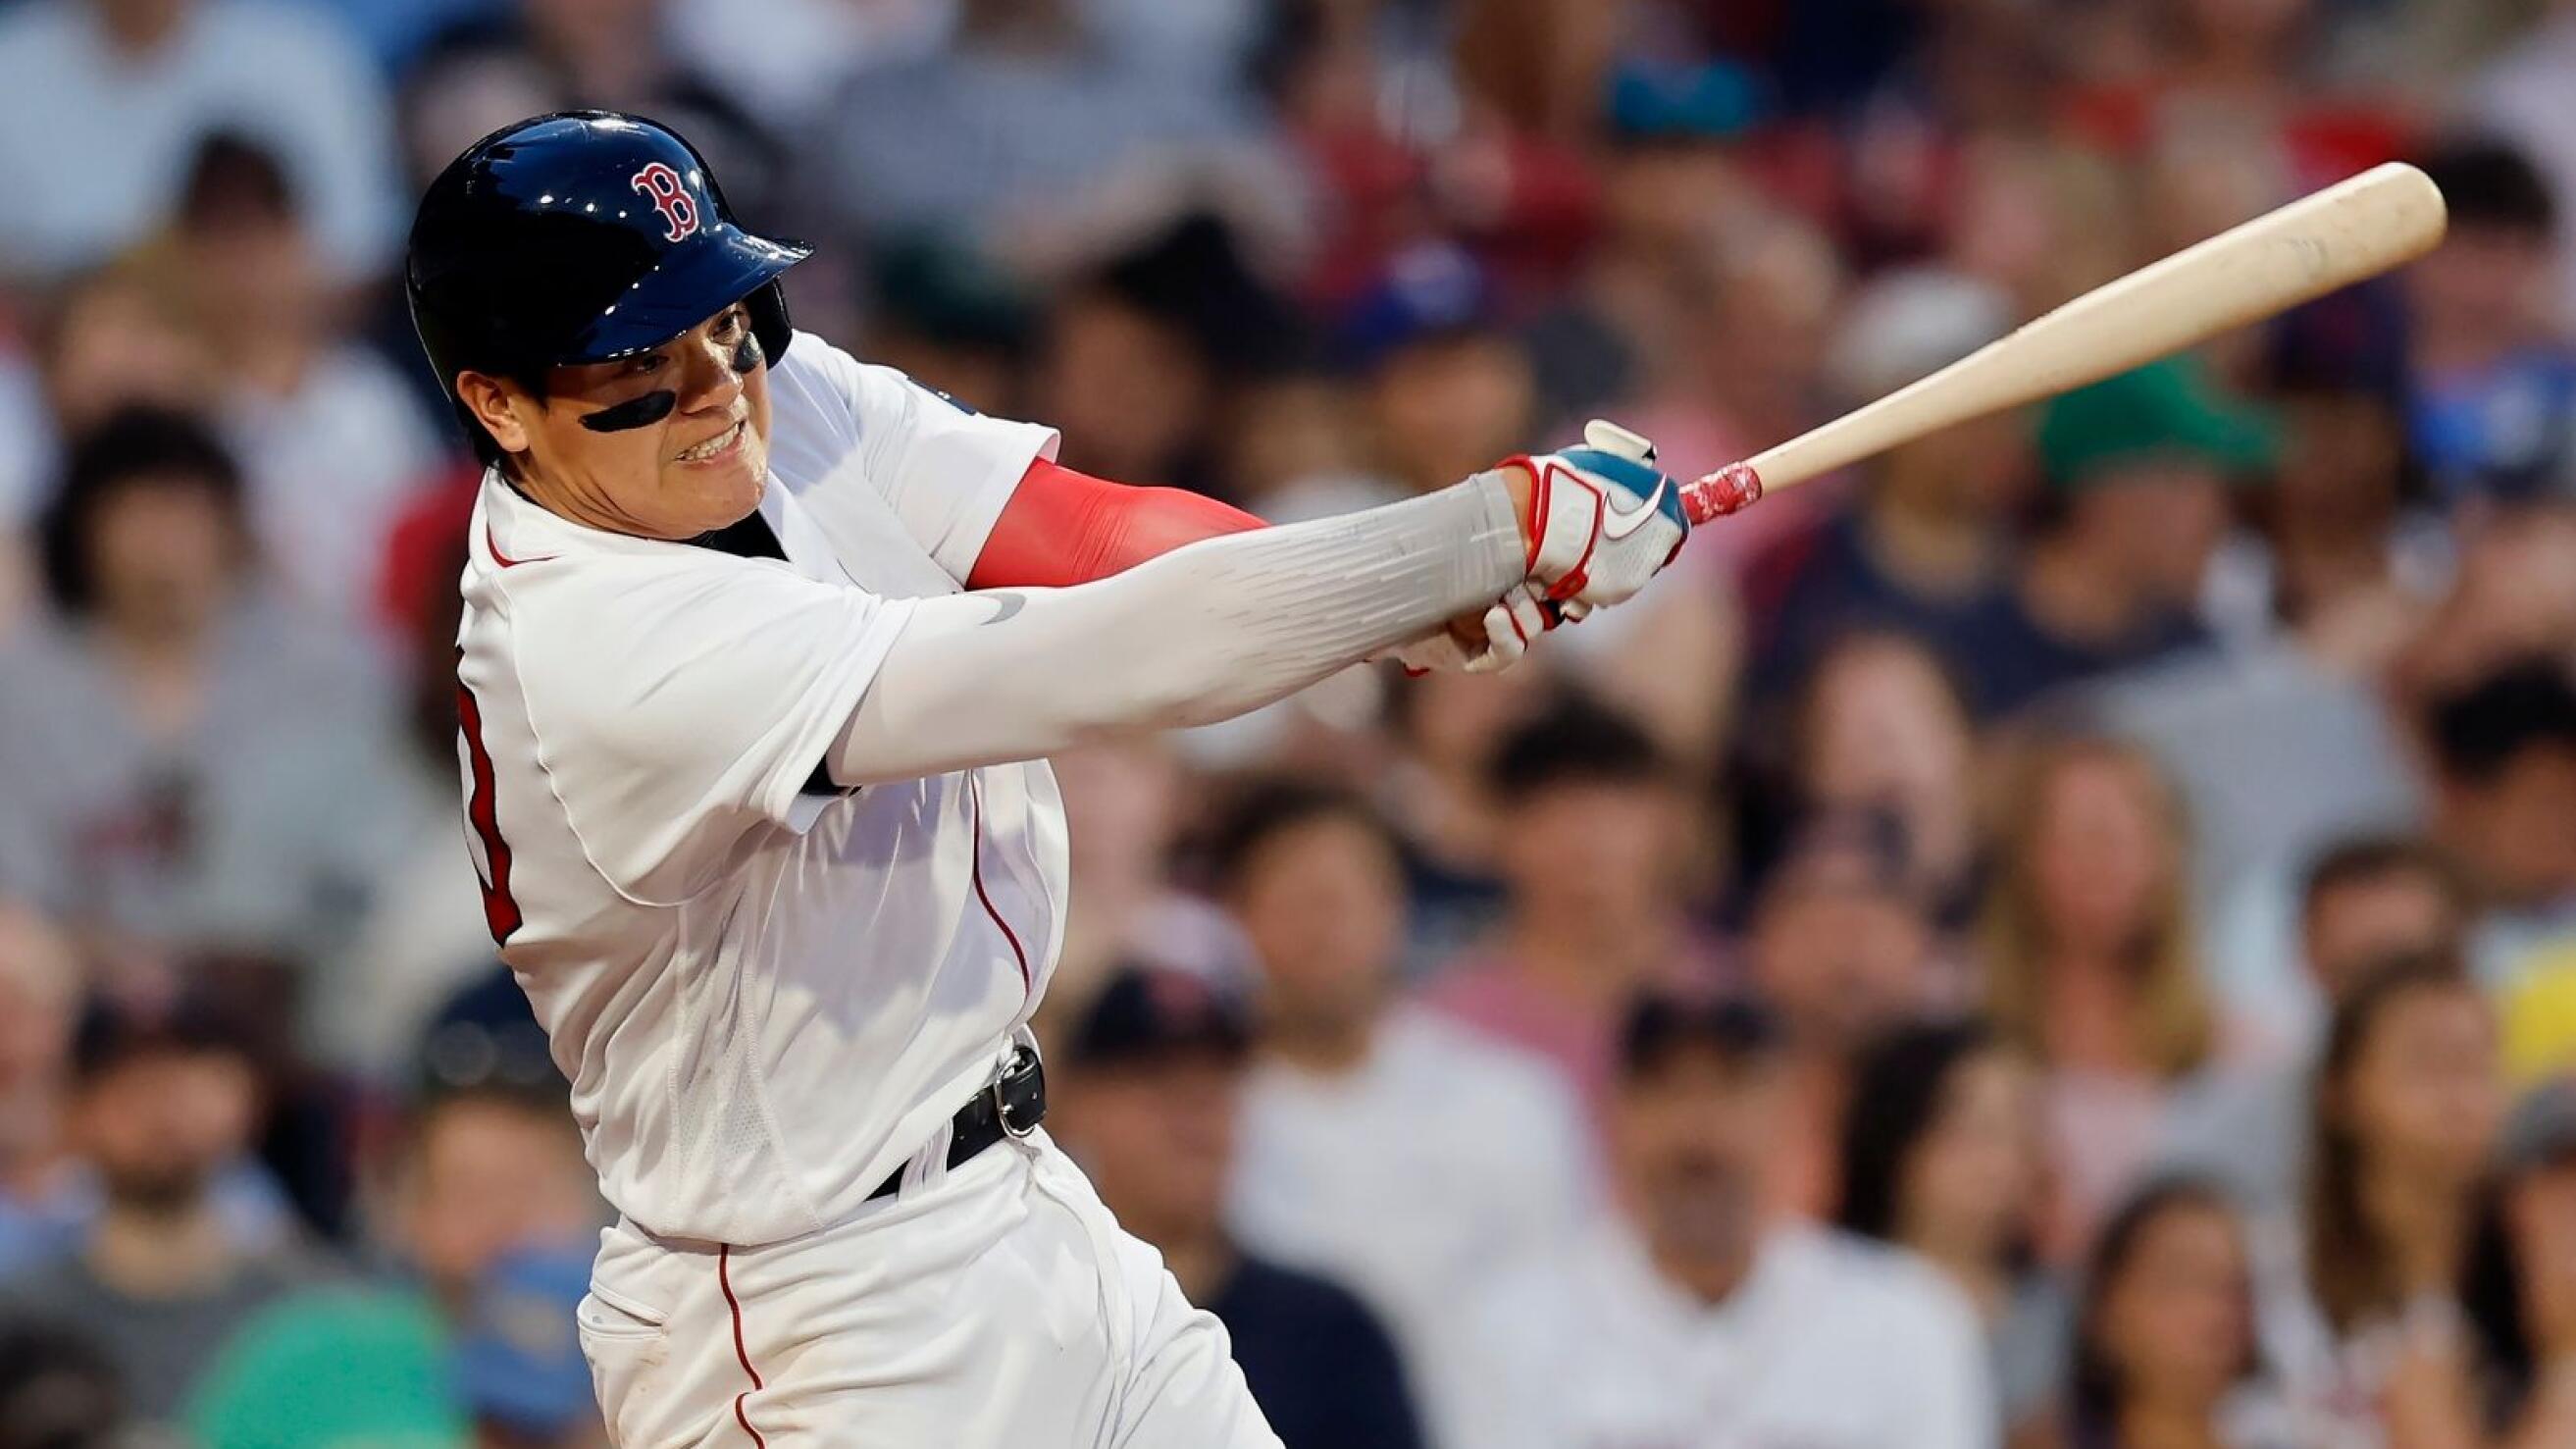 Athletics bring home losing streak into Sox matchup